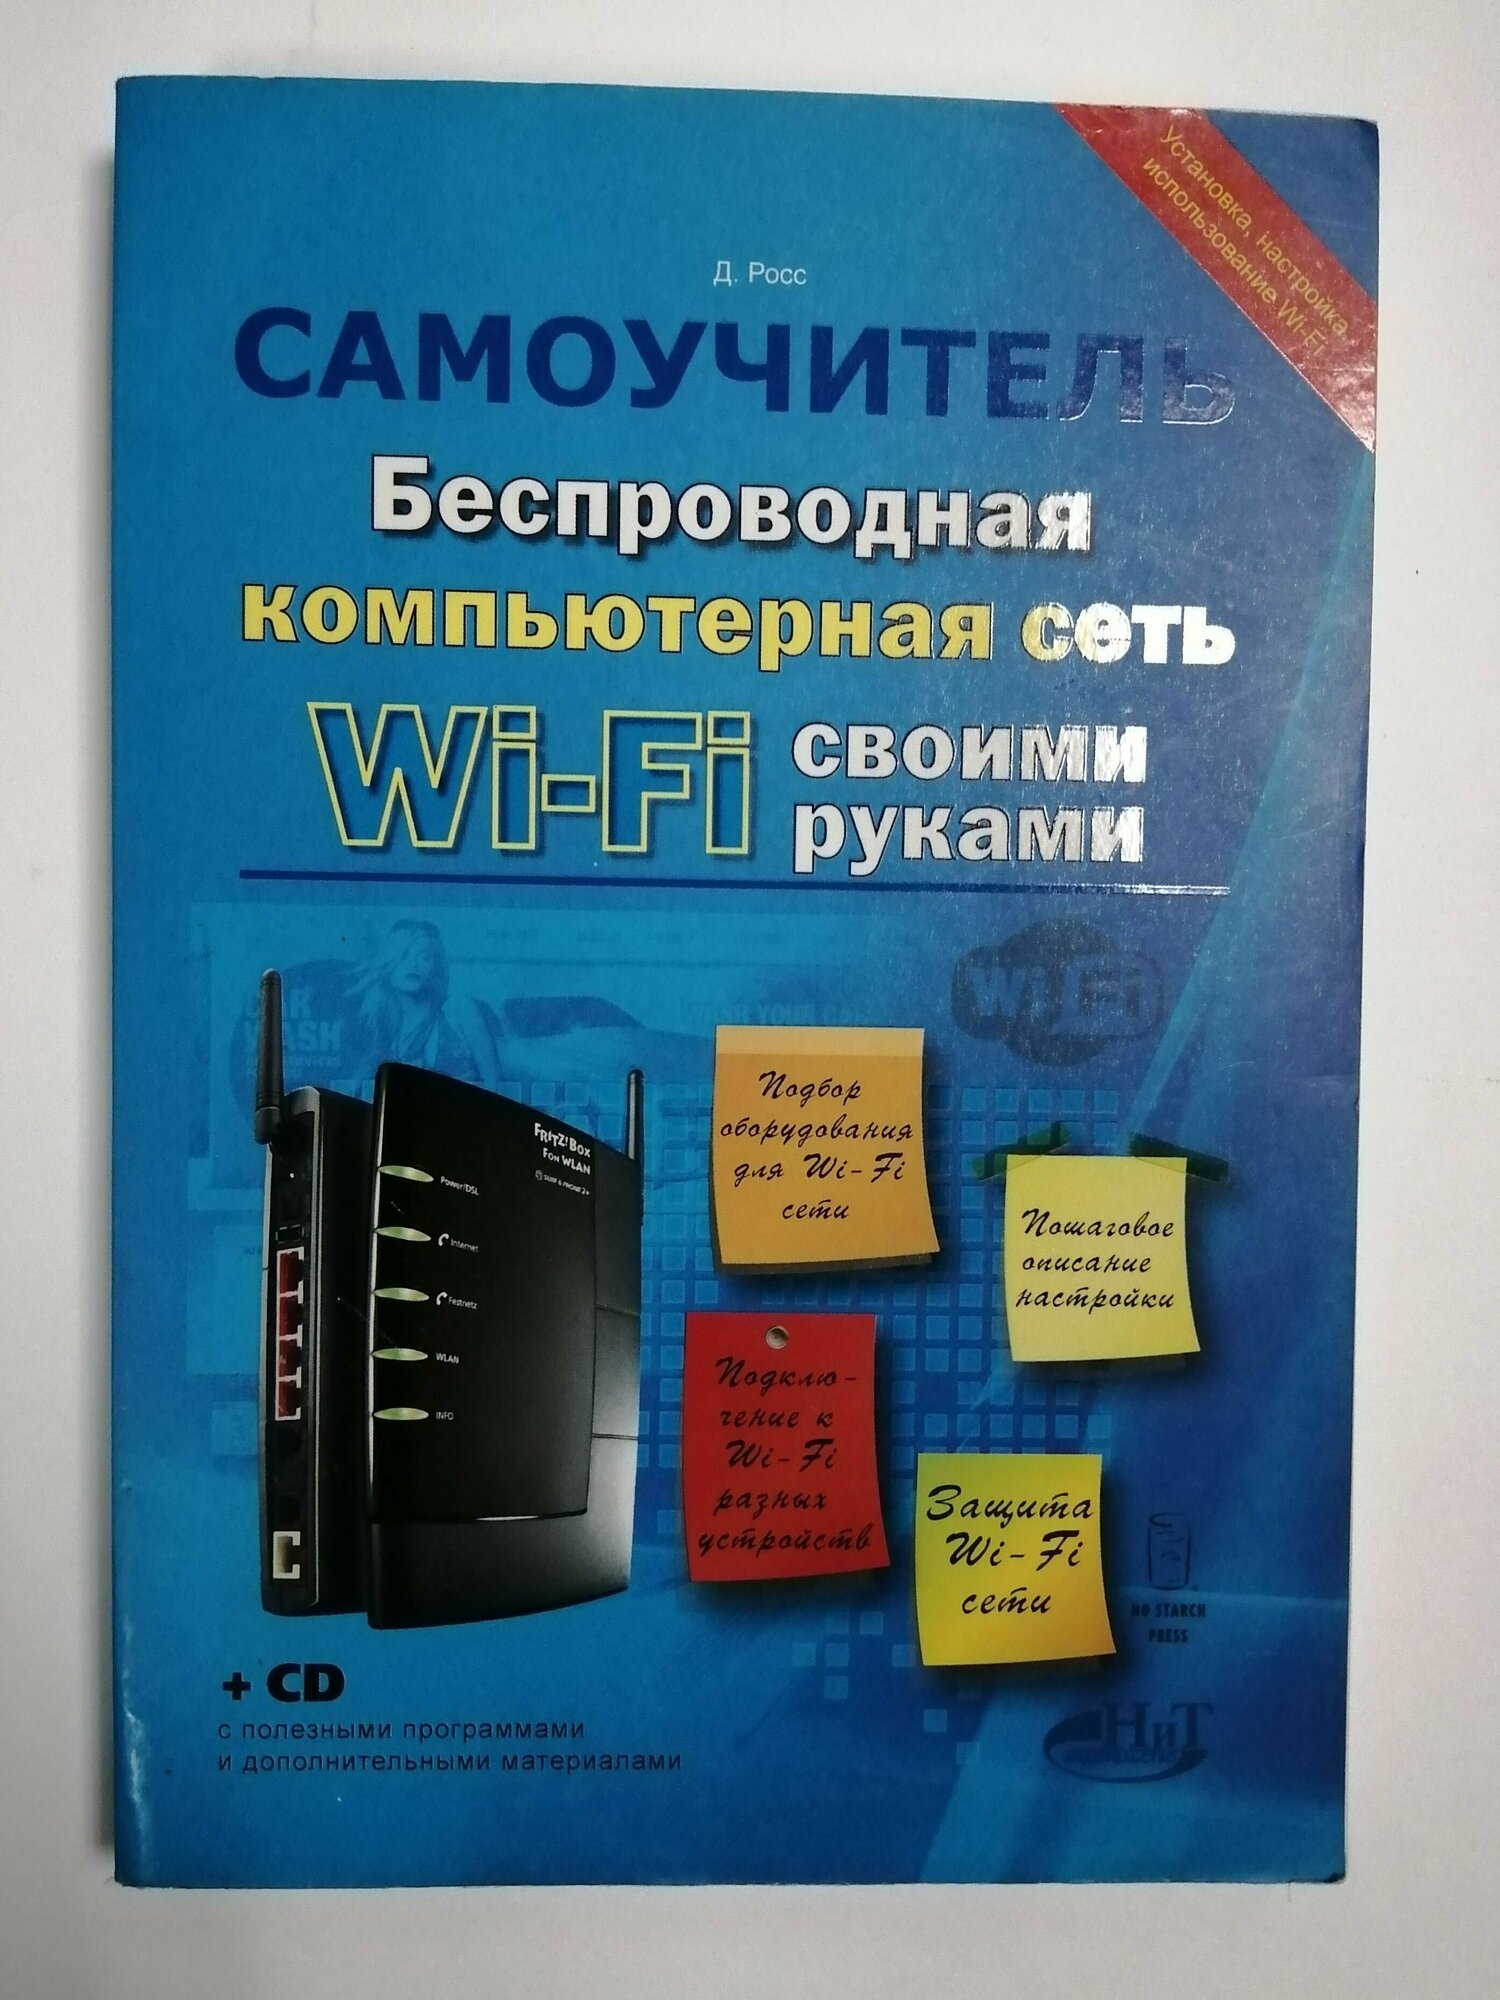 Беспроводная компьютерная сеть Wi-Fi своими руками